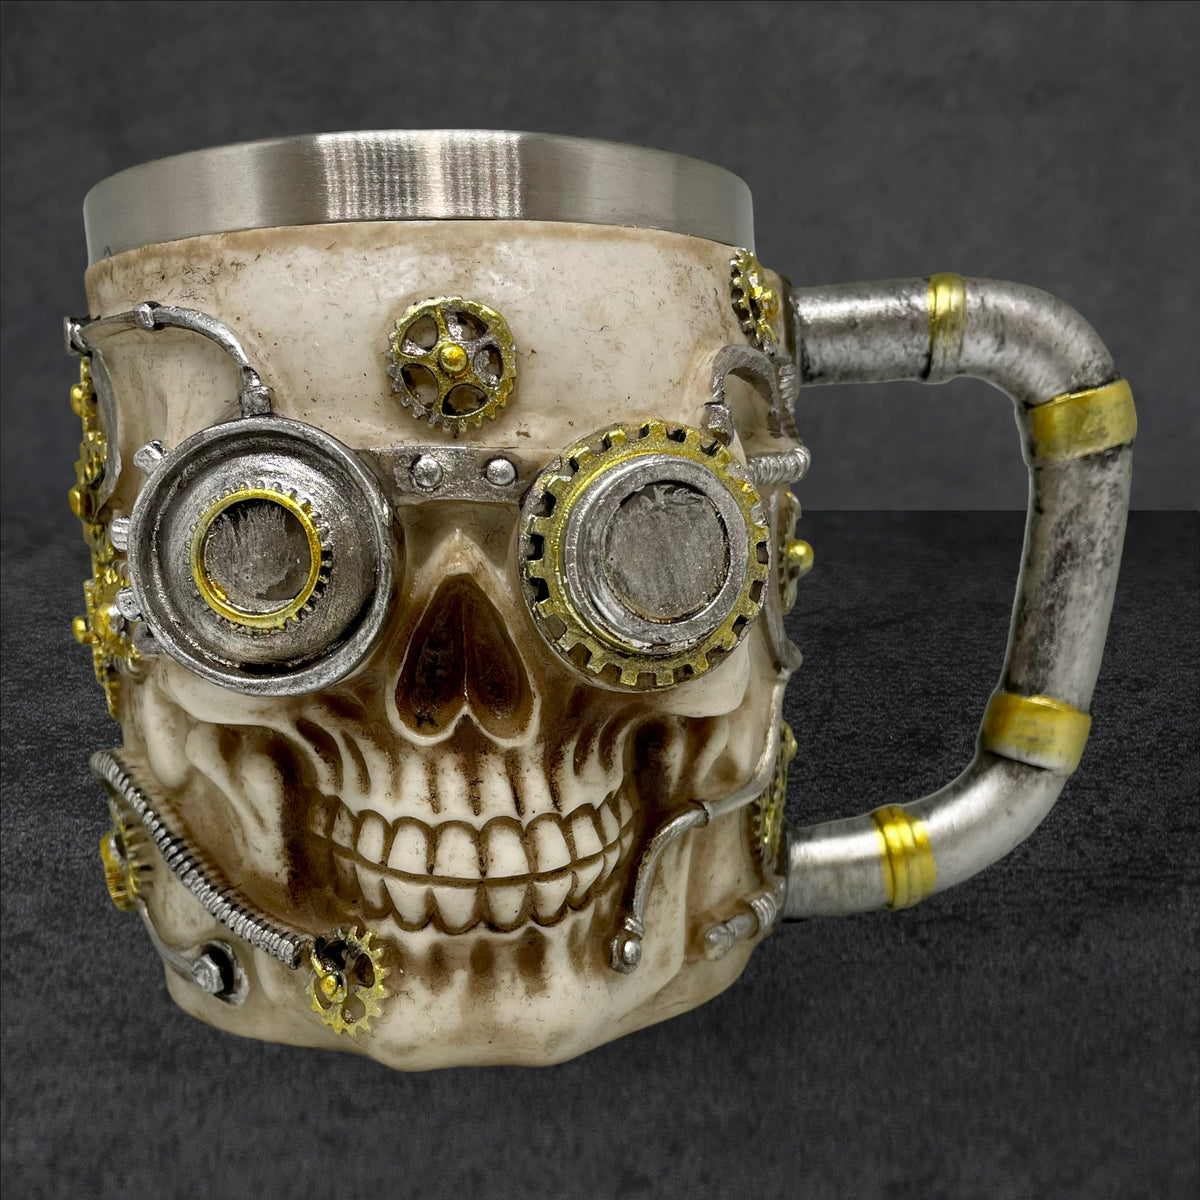 Skull Mug Steampunk Coffee Cup 14oz / 400ml